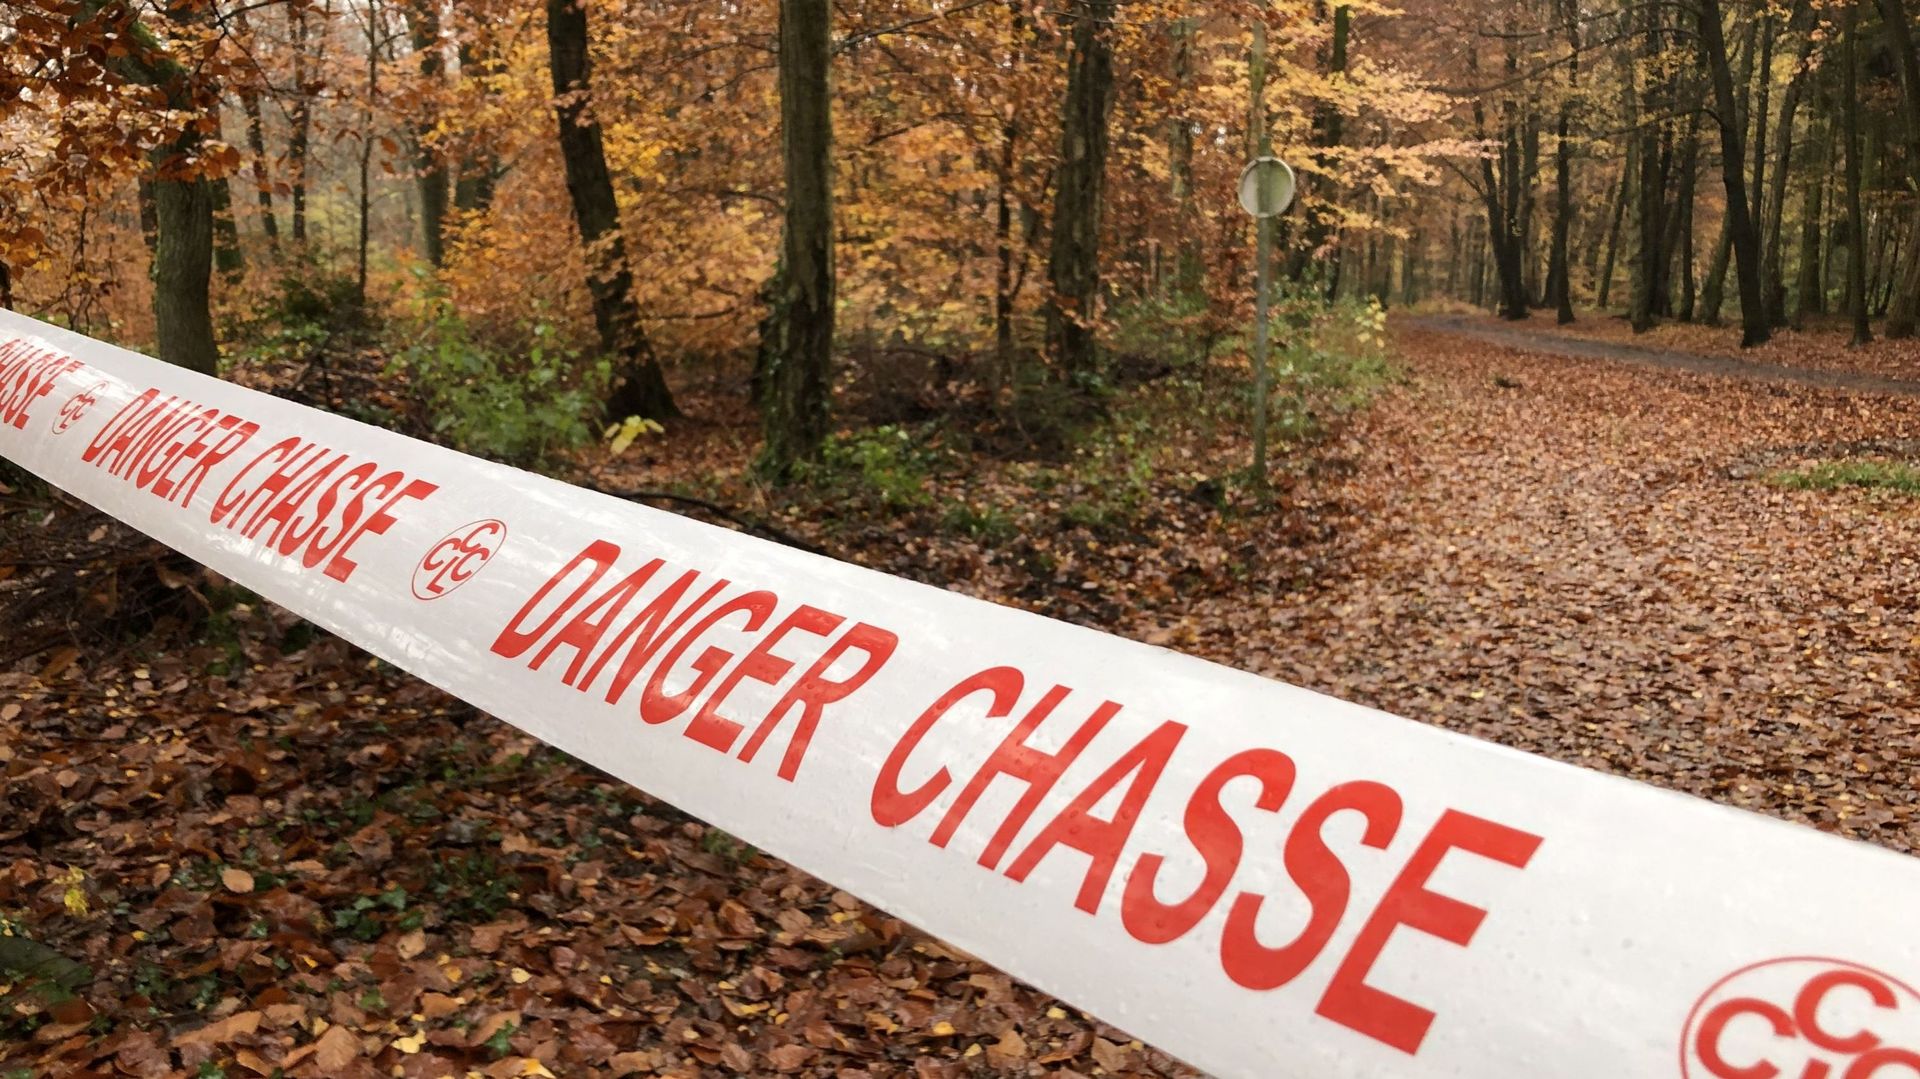 A différents endroits, les utilisateurs de la forêt sont informés qu'une chasse est organisée.